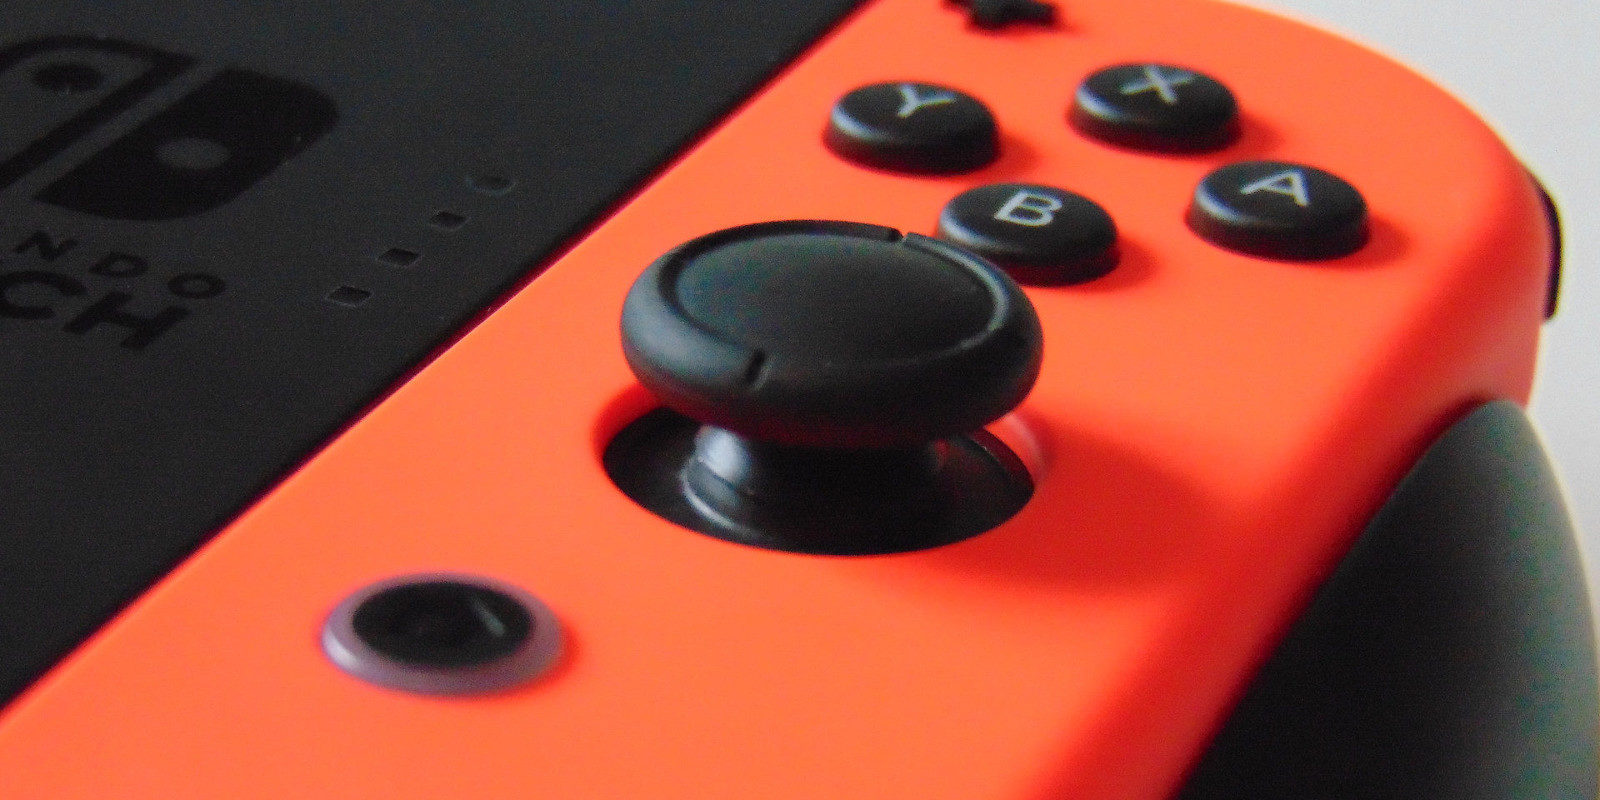 DIRECTO Nintendo Switch, respondiendo vuestras preguntas - Día 4